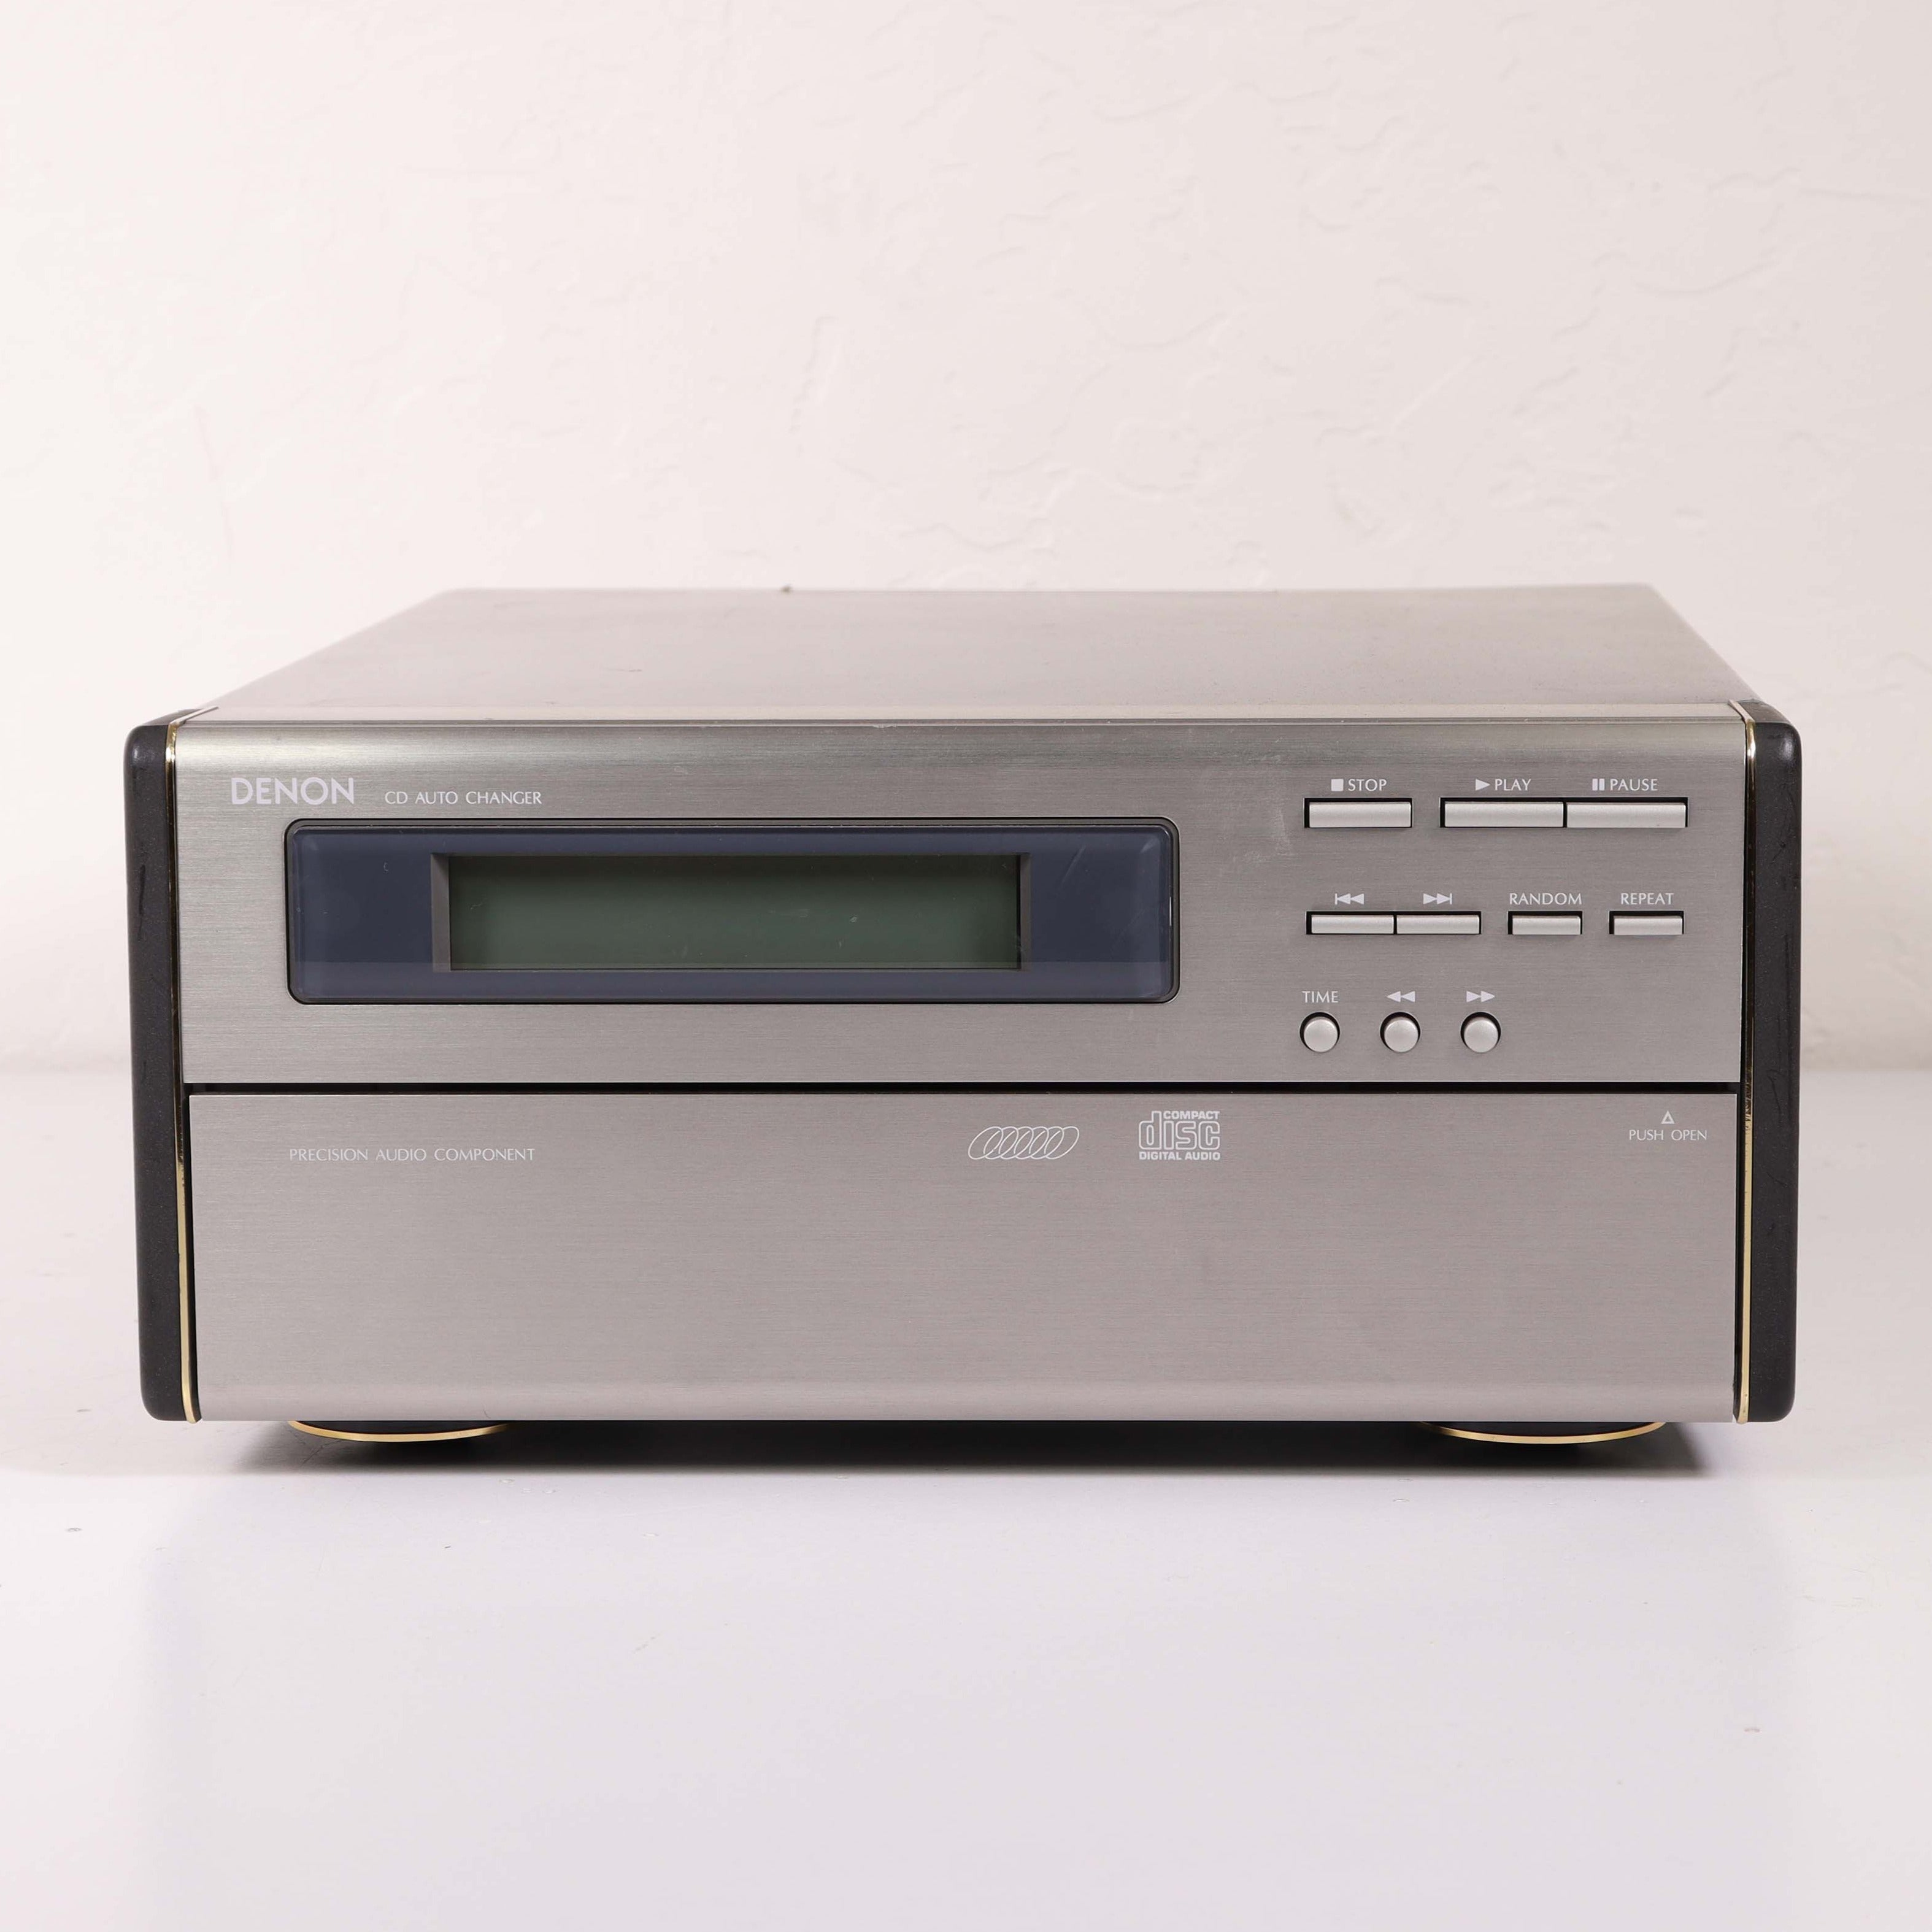 udluftning Hilse Børns dag Denon UDCM-150 6 Disc CD Player (Requires Special Denon System D-150)